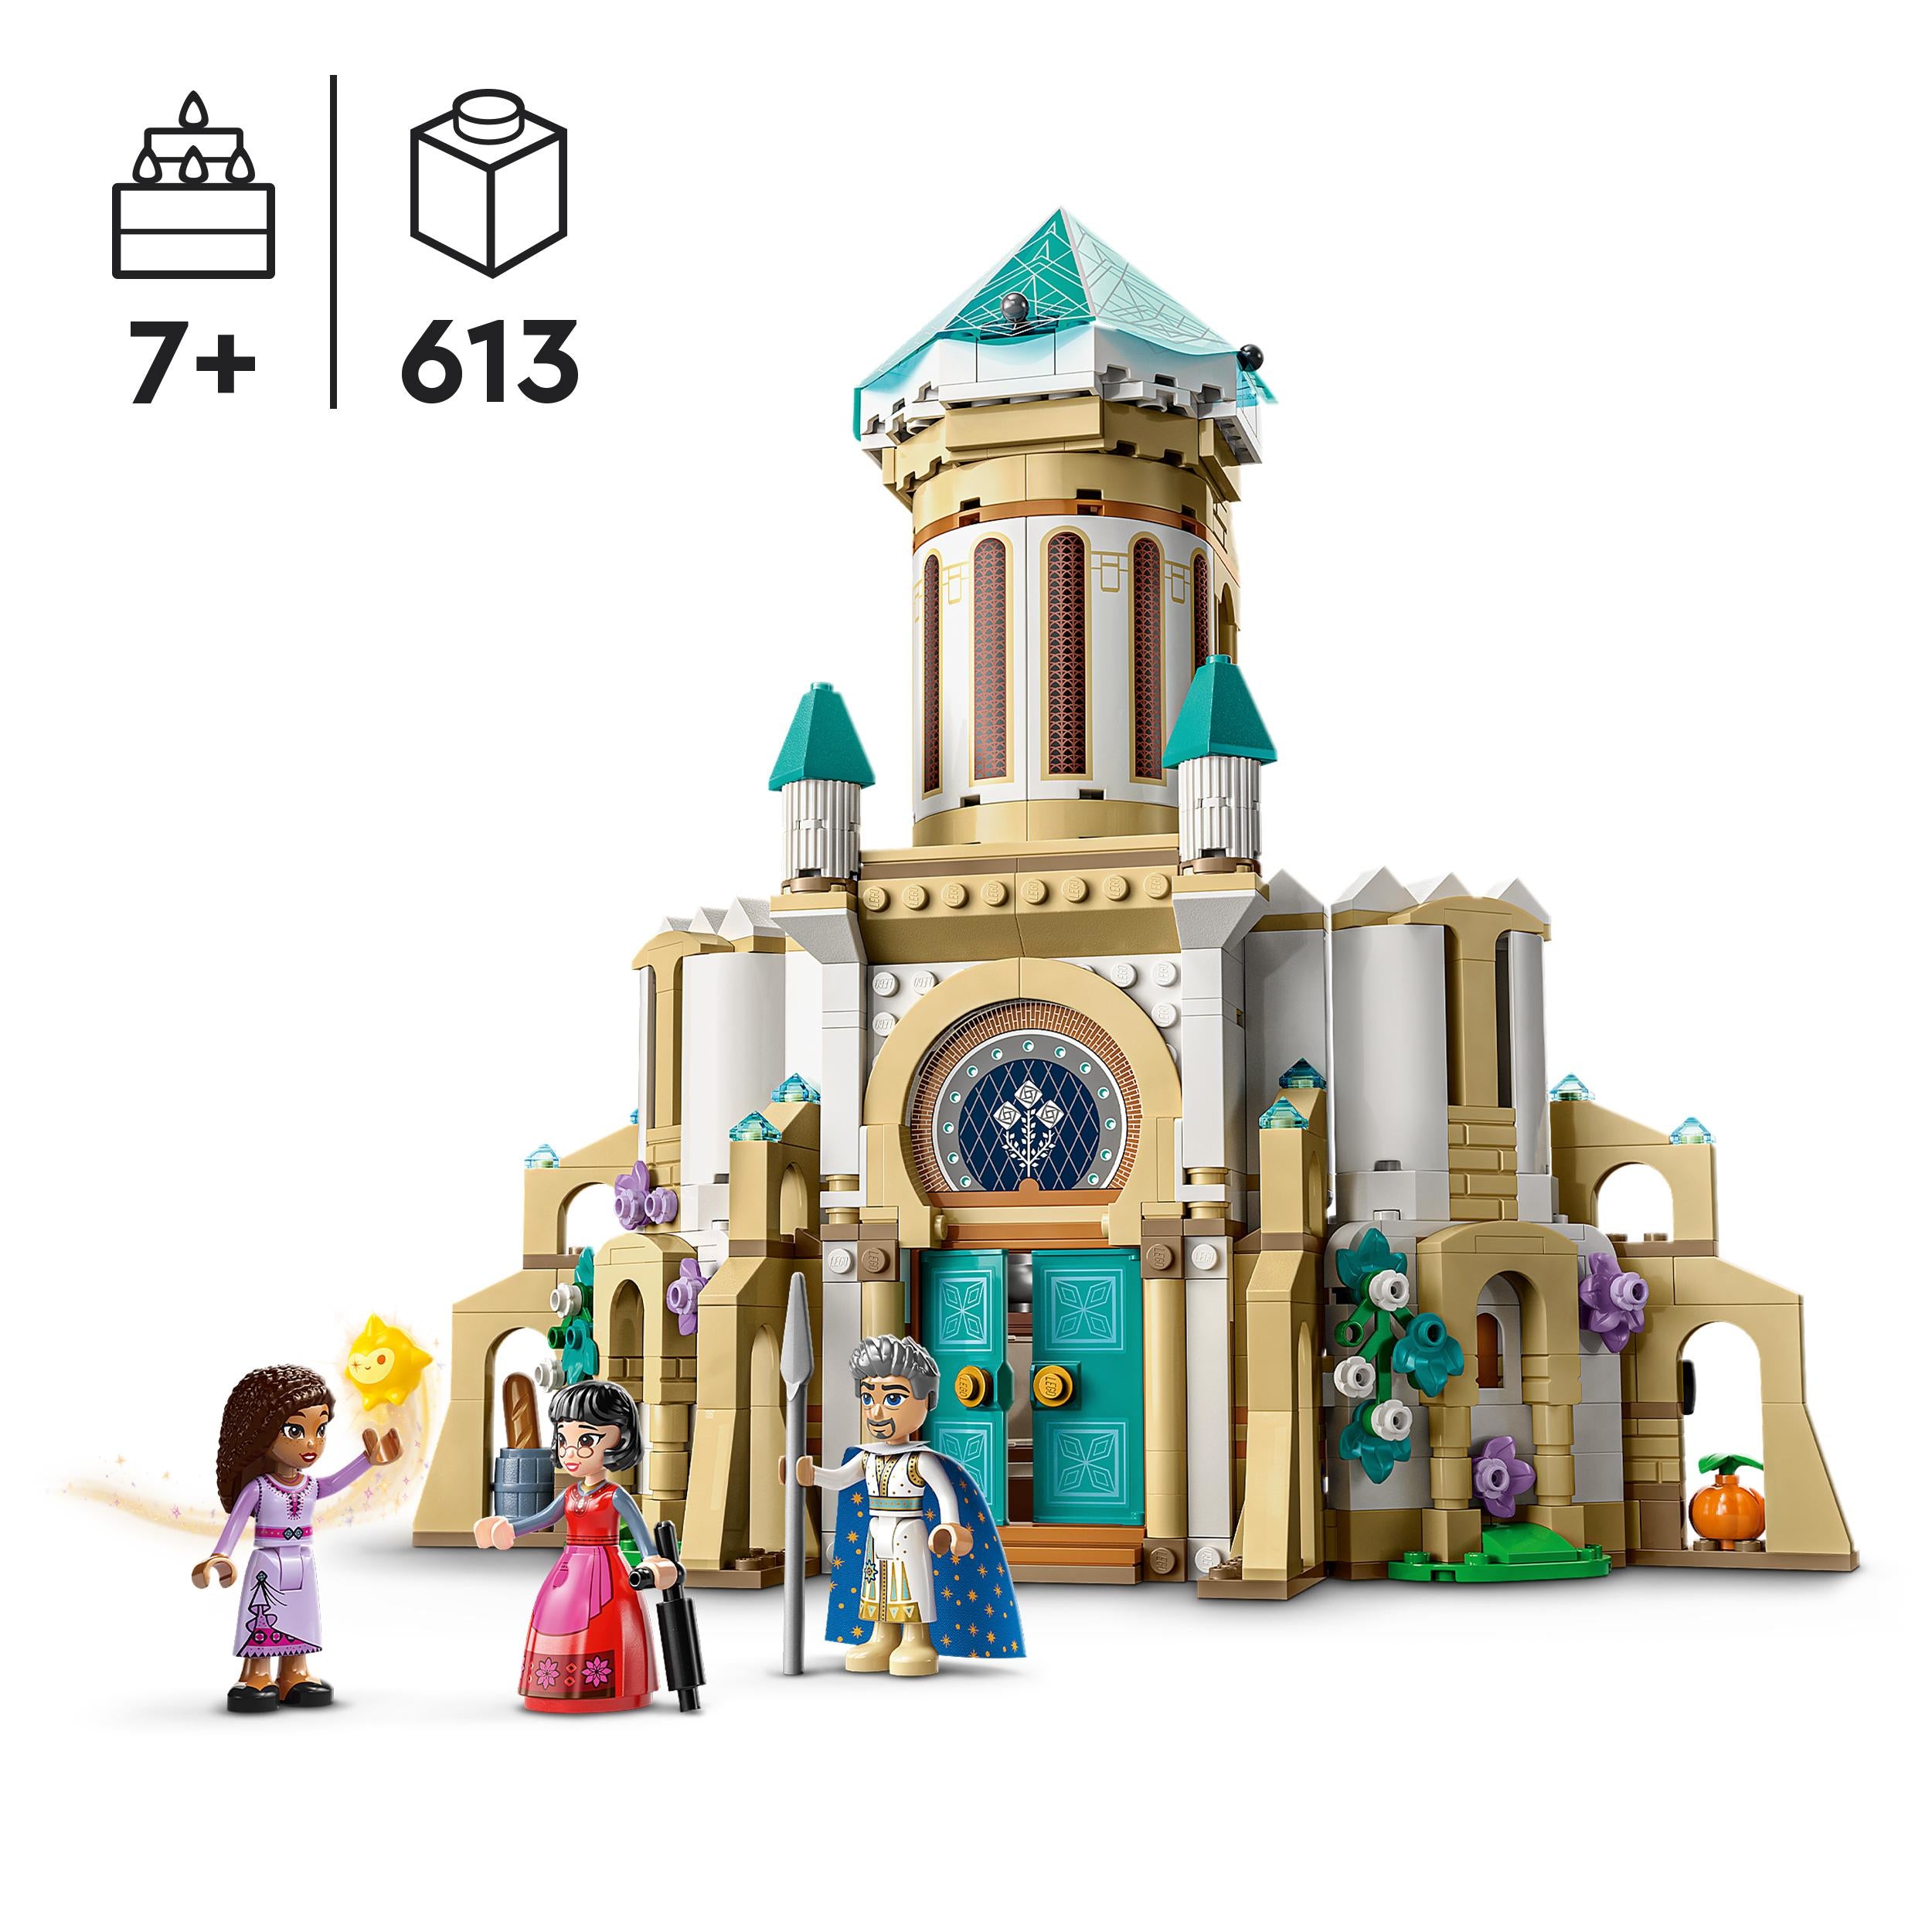 43224 LEGO Disney Princess -Disney Il castello di Re Magnifico